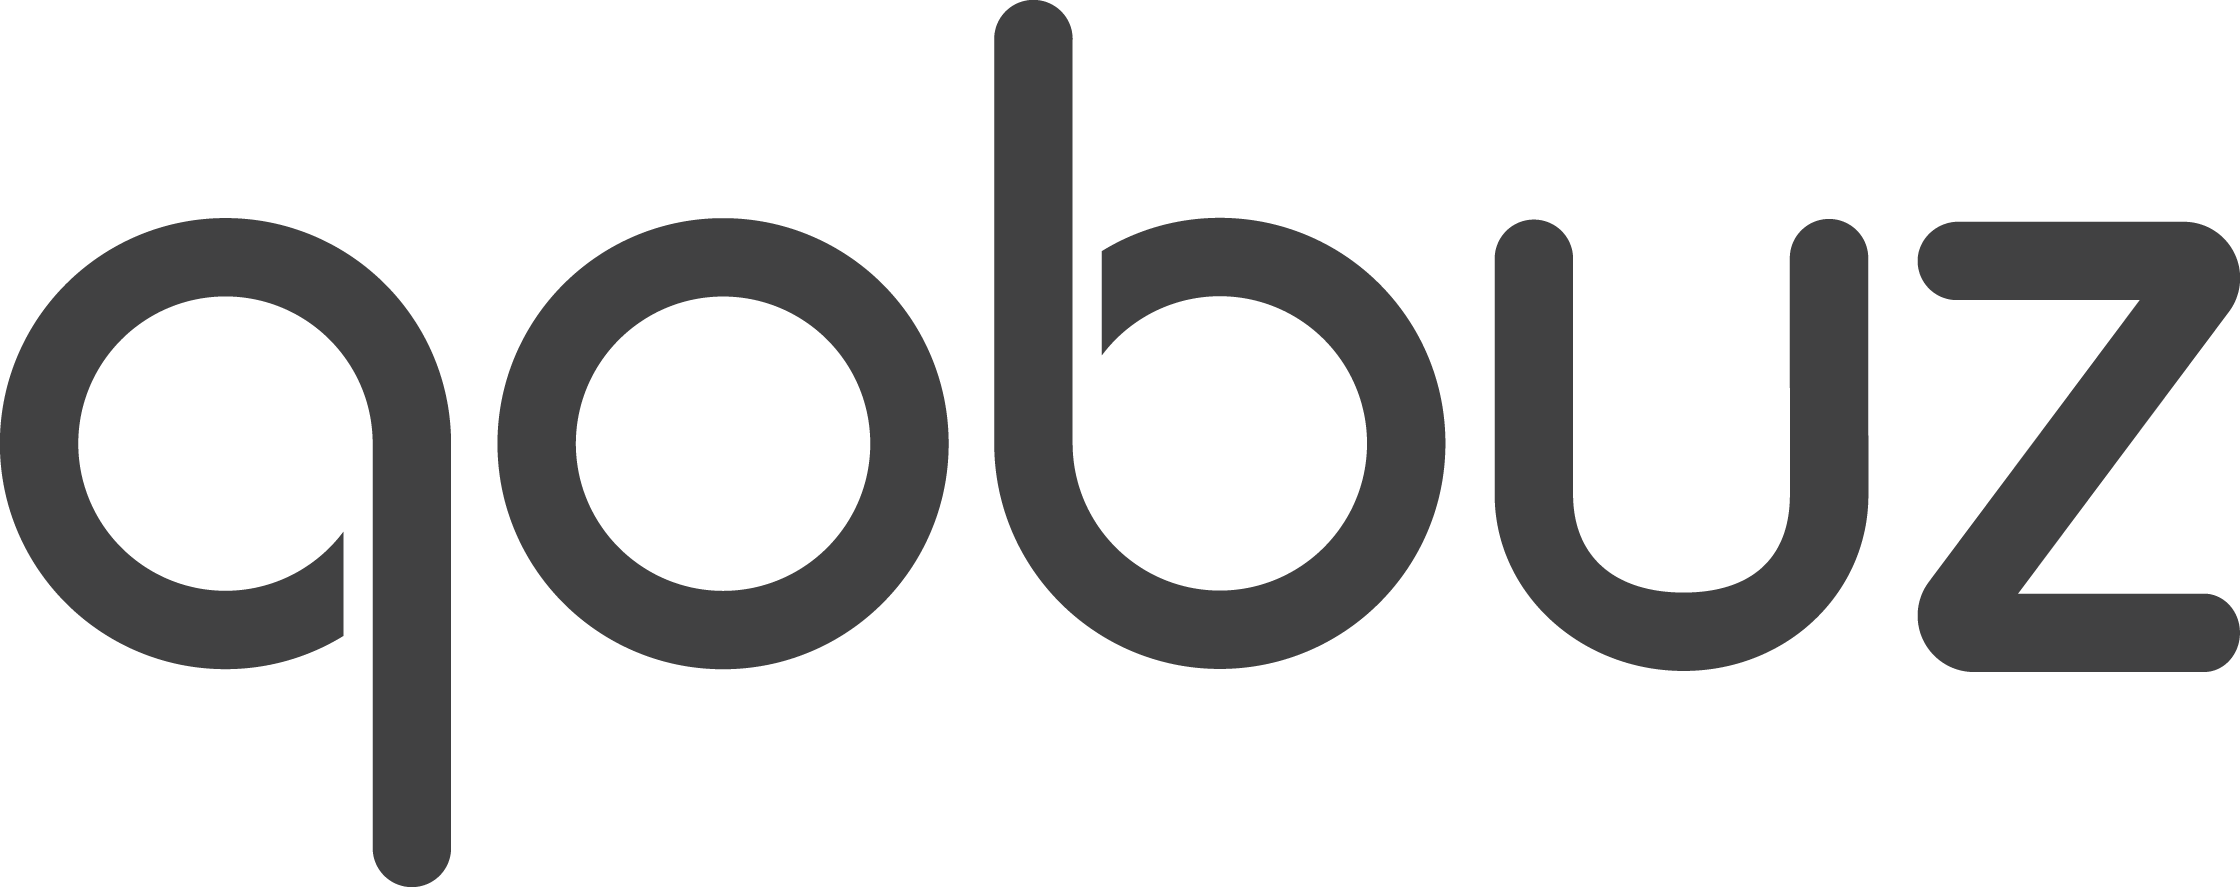 Qobuz kostenlos testen und ein gratis Hi-Res Album sichern | Audio Streaming in High Fidelity